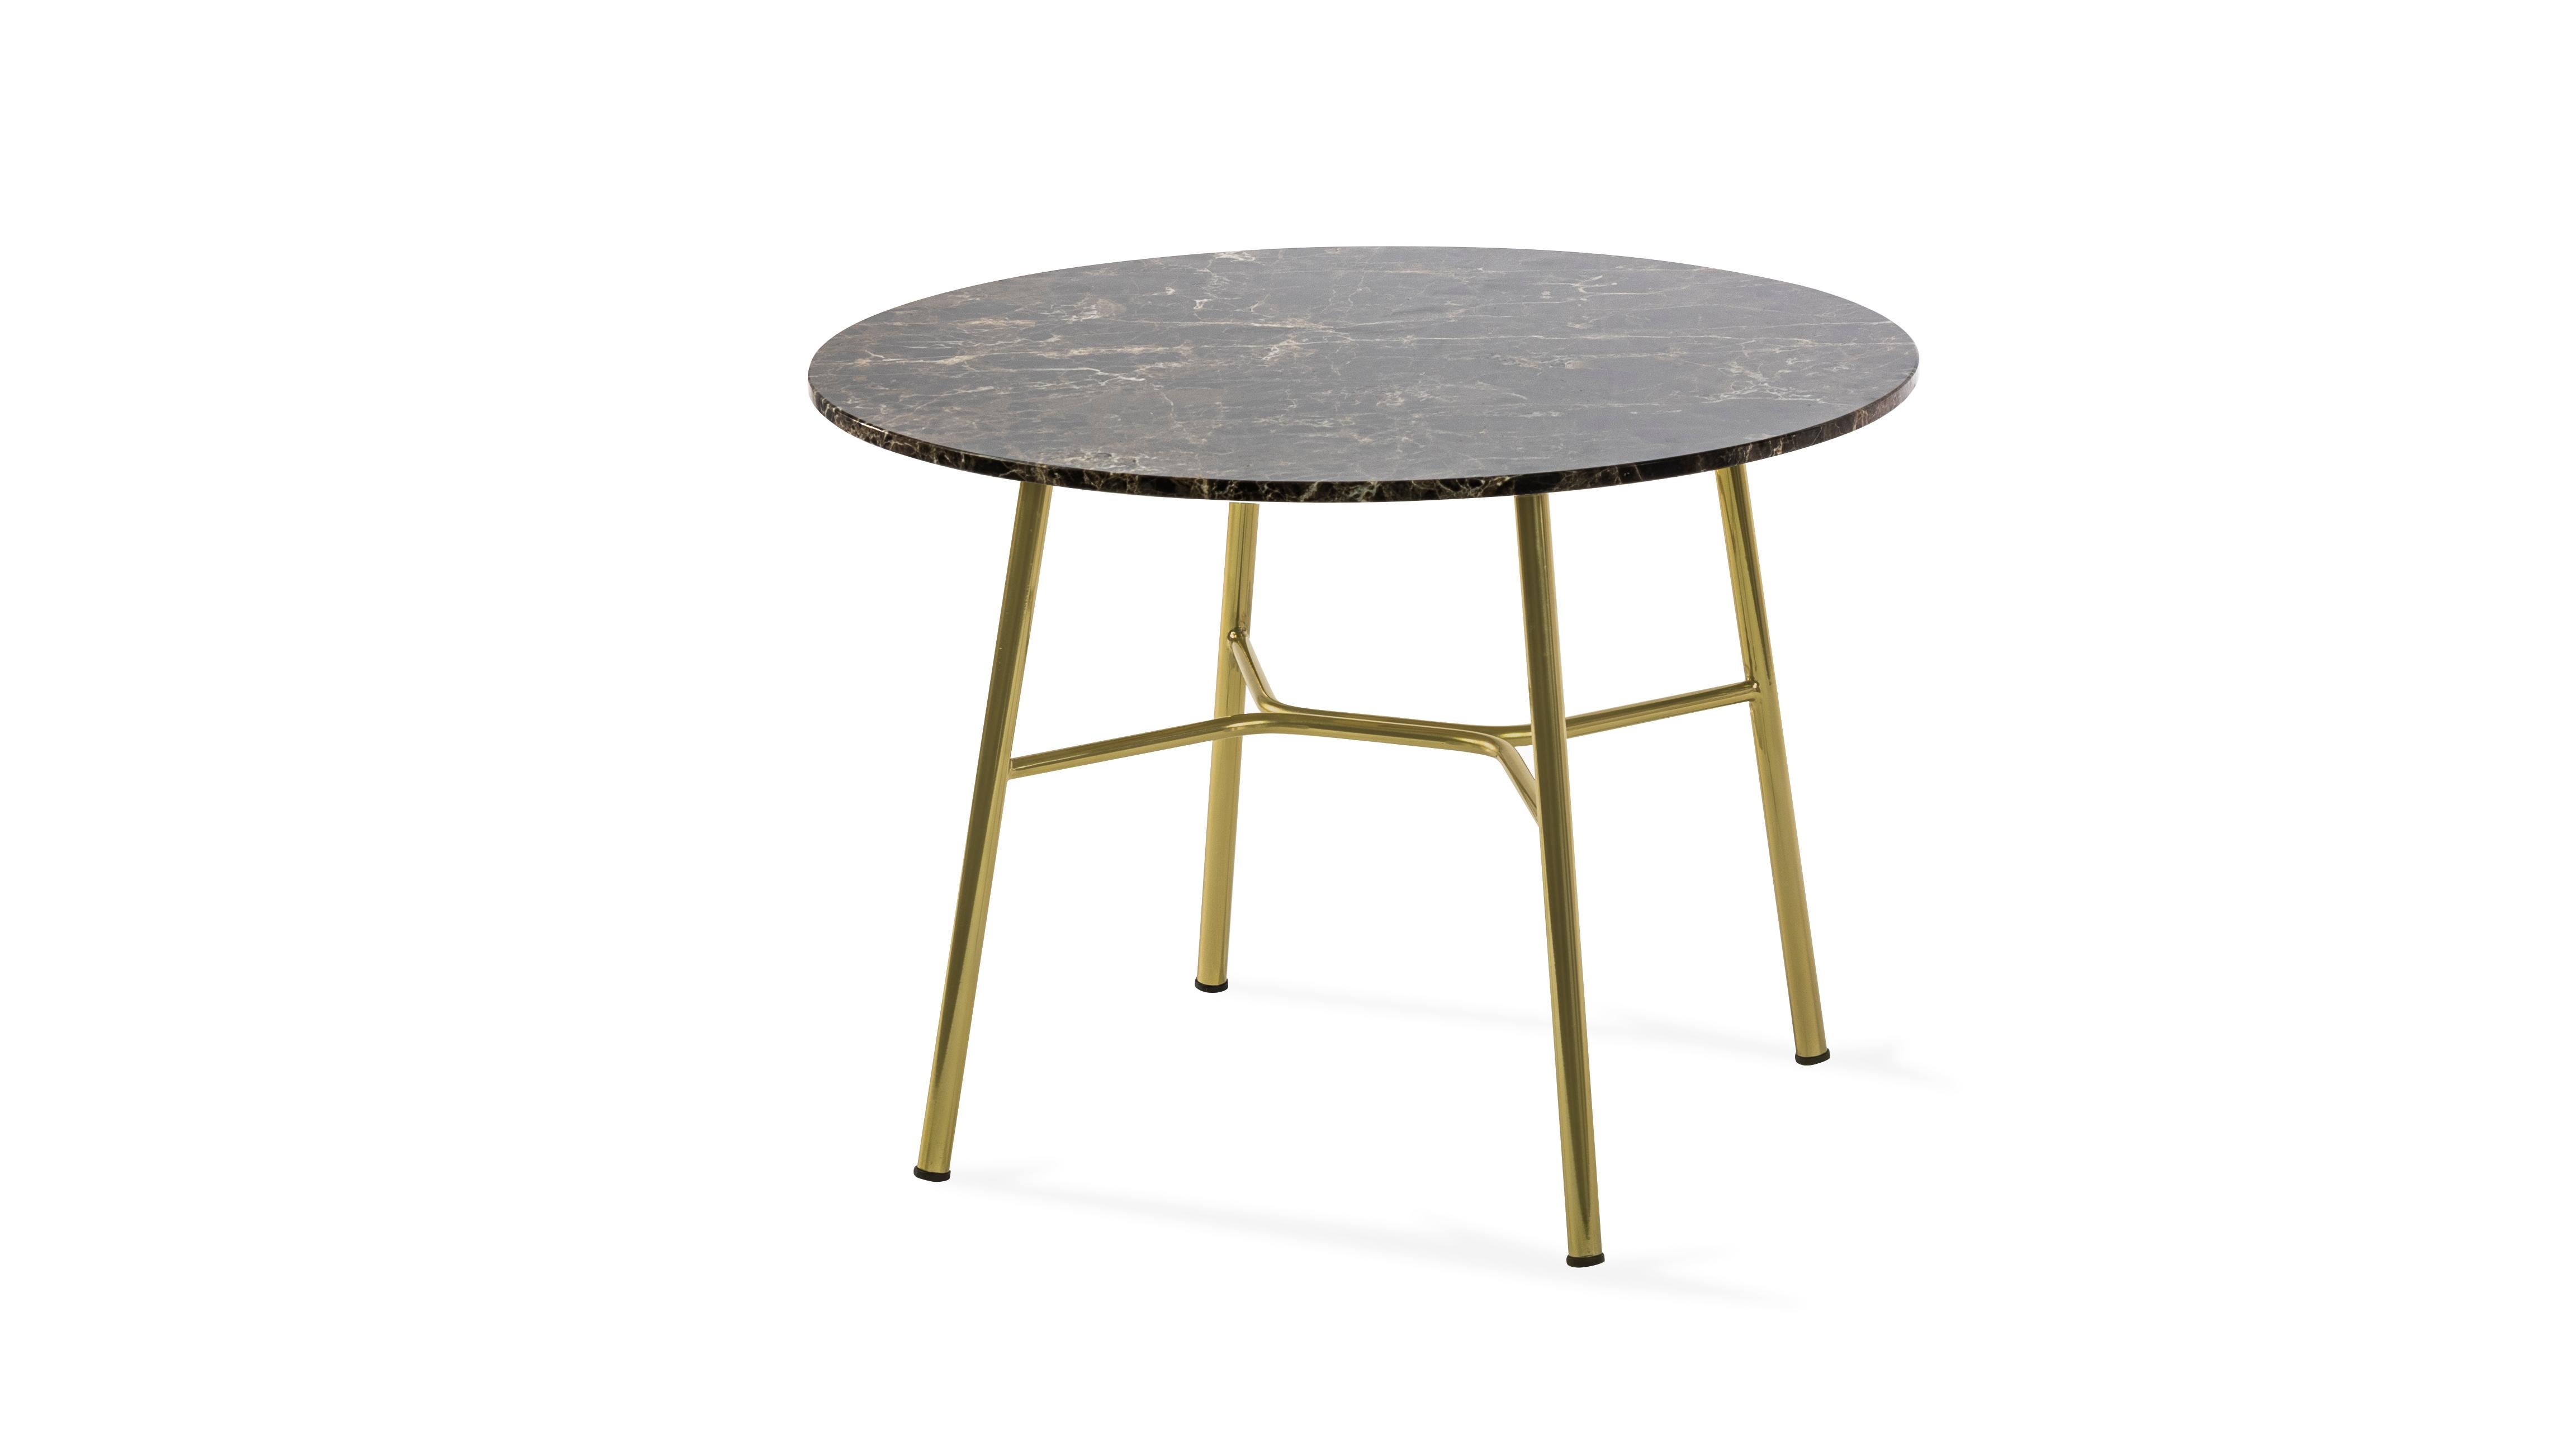 italien Petite table Yuki, cadre métallique, rond, couleur marron, design, table basse, marbre en vente